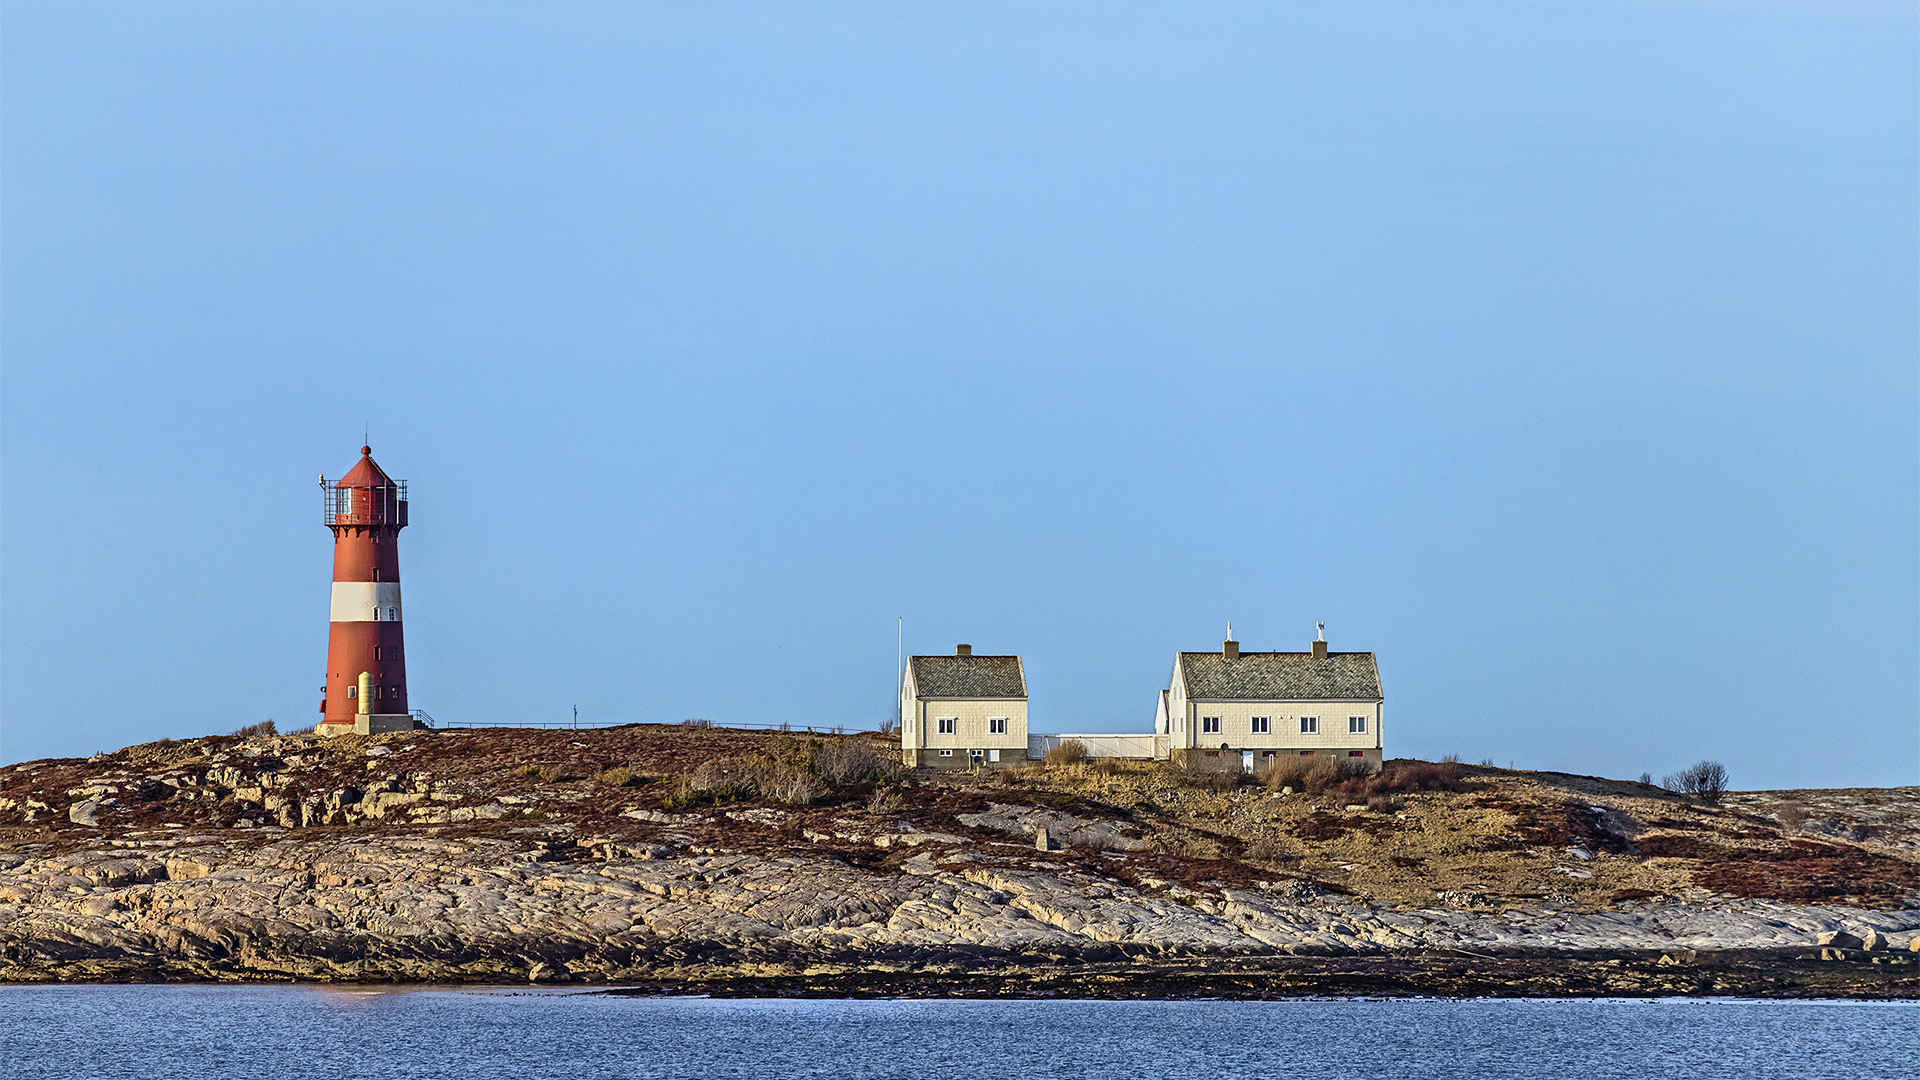 Bilderbuchleuchtturm beobachtet vom Hurtigschiff, 1 Fahrtstunde südlich von Rorvik.